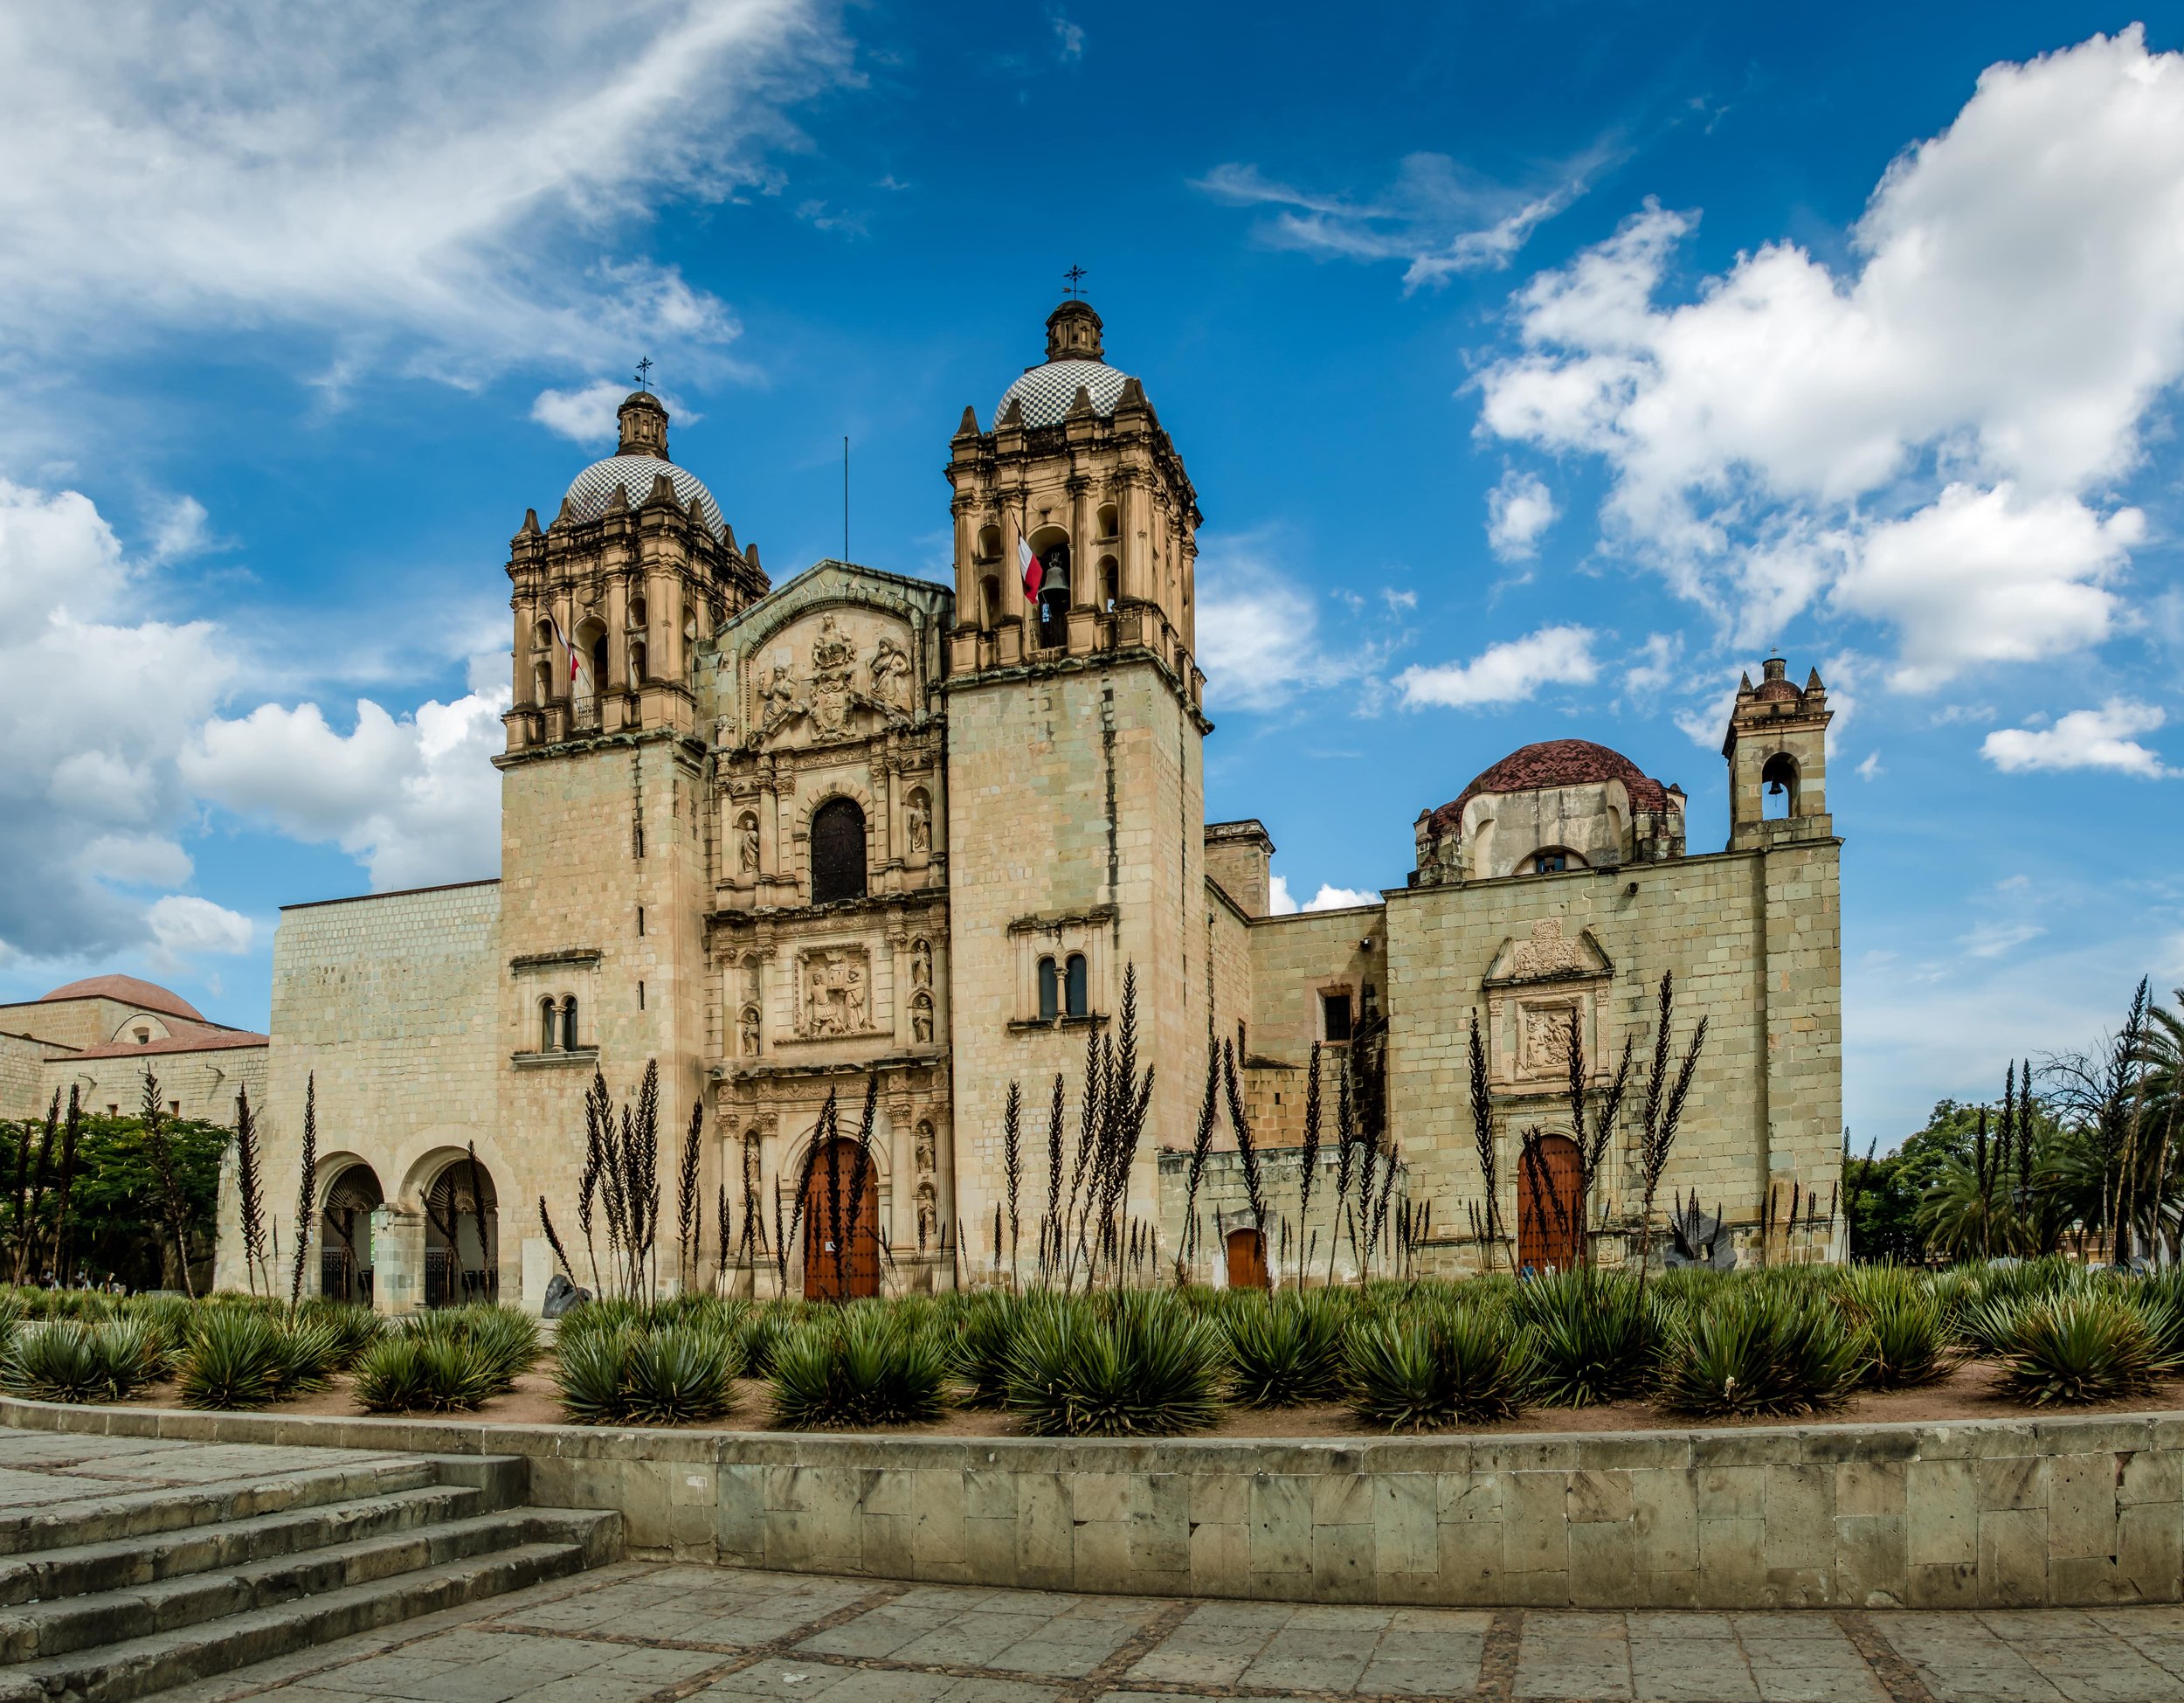 church-of-santo-domingo-de-guzman-oaxaca-mexico-2022-03-05-22-41-23-utc-min.jpg